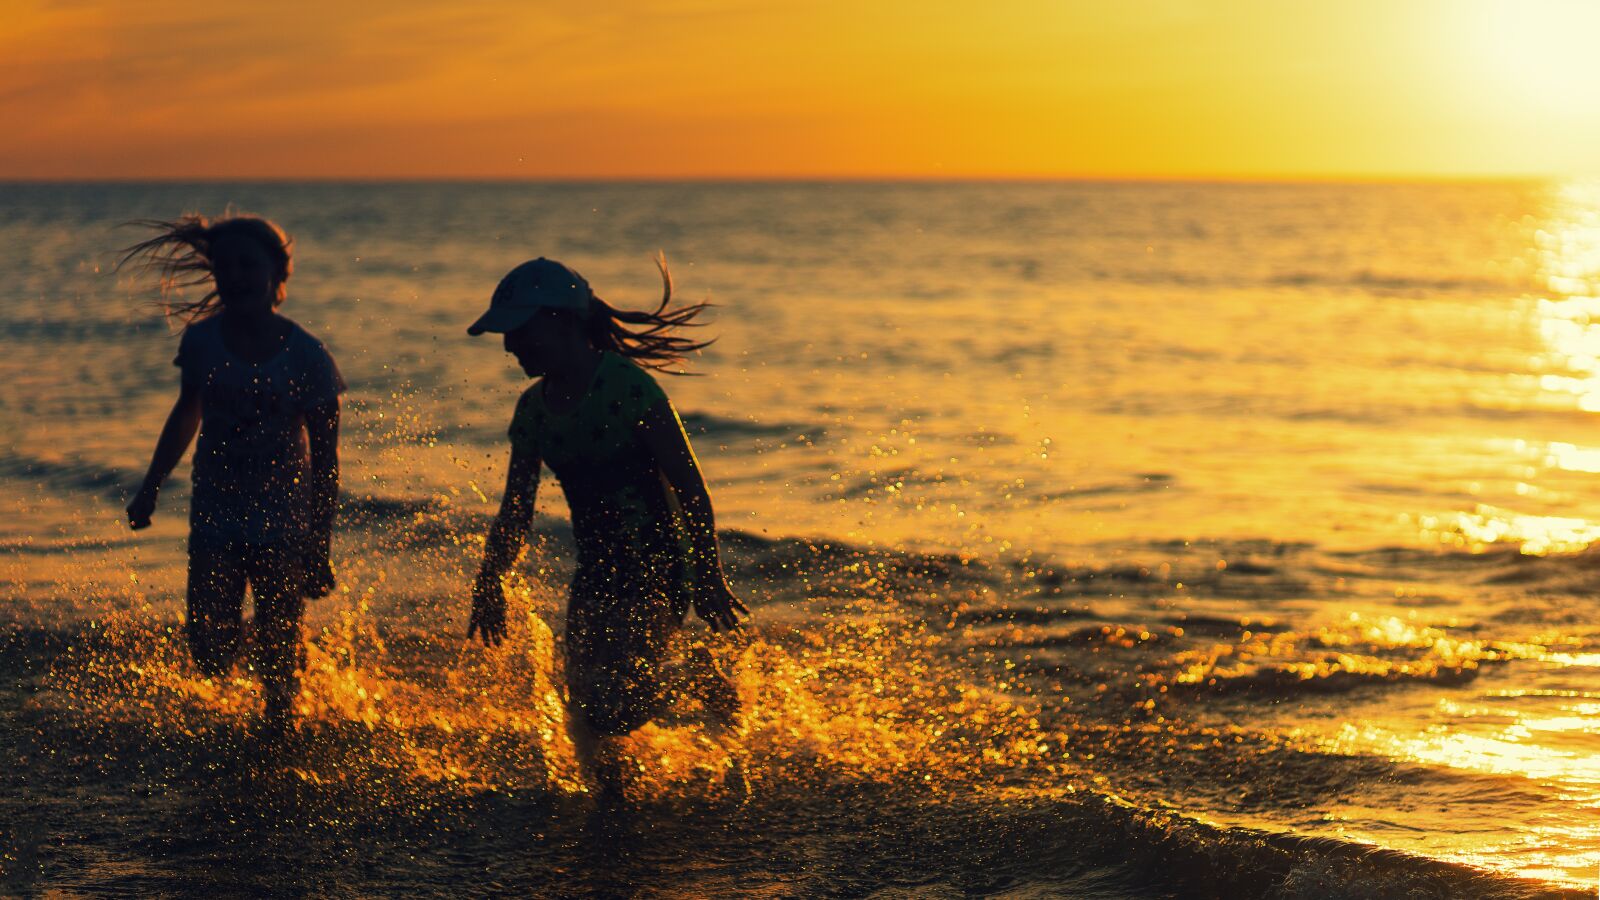 Sony a7 sample photo. Beach, sunset, girl photography